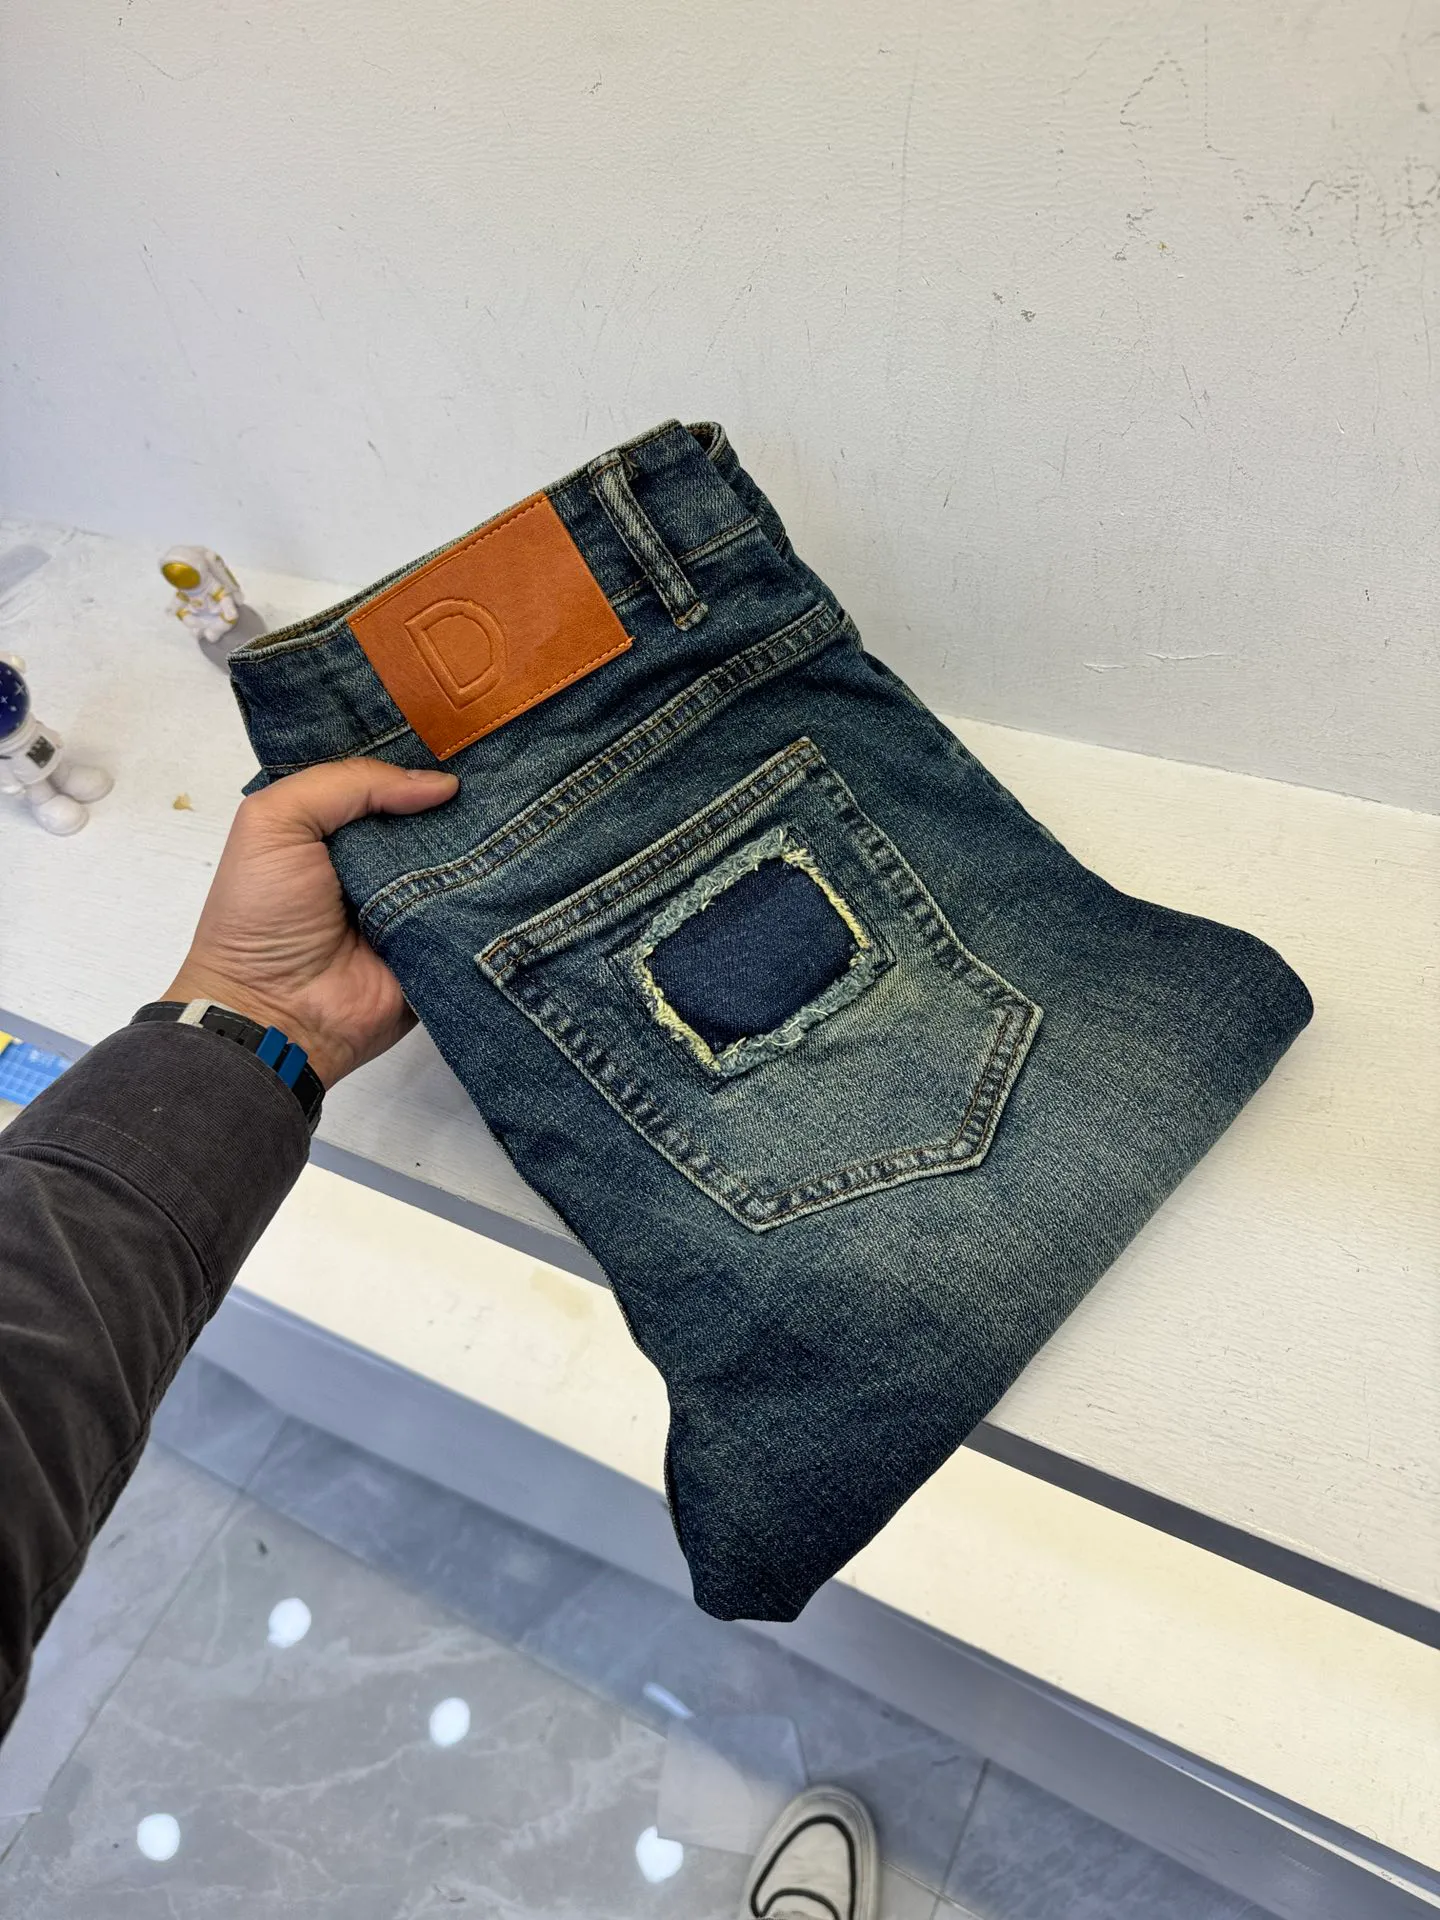 2024 Top совершенно новые джинсы Высококачественные материалы для растяжения с жесткими ногами дизайн мужчин роскошные джинсы